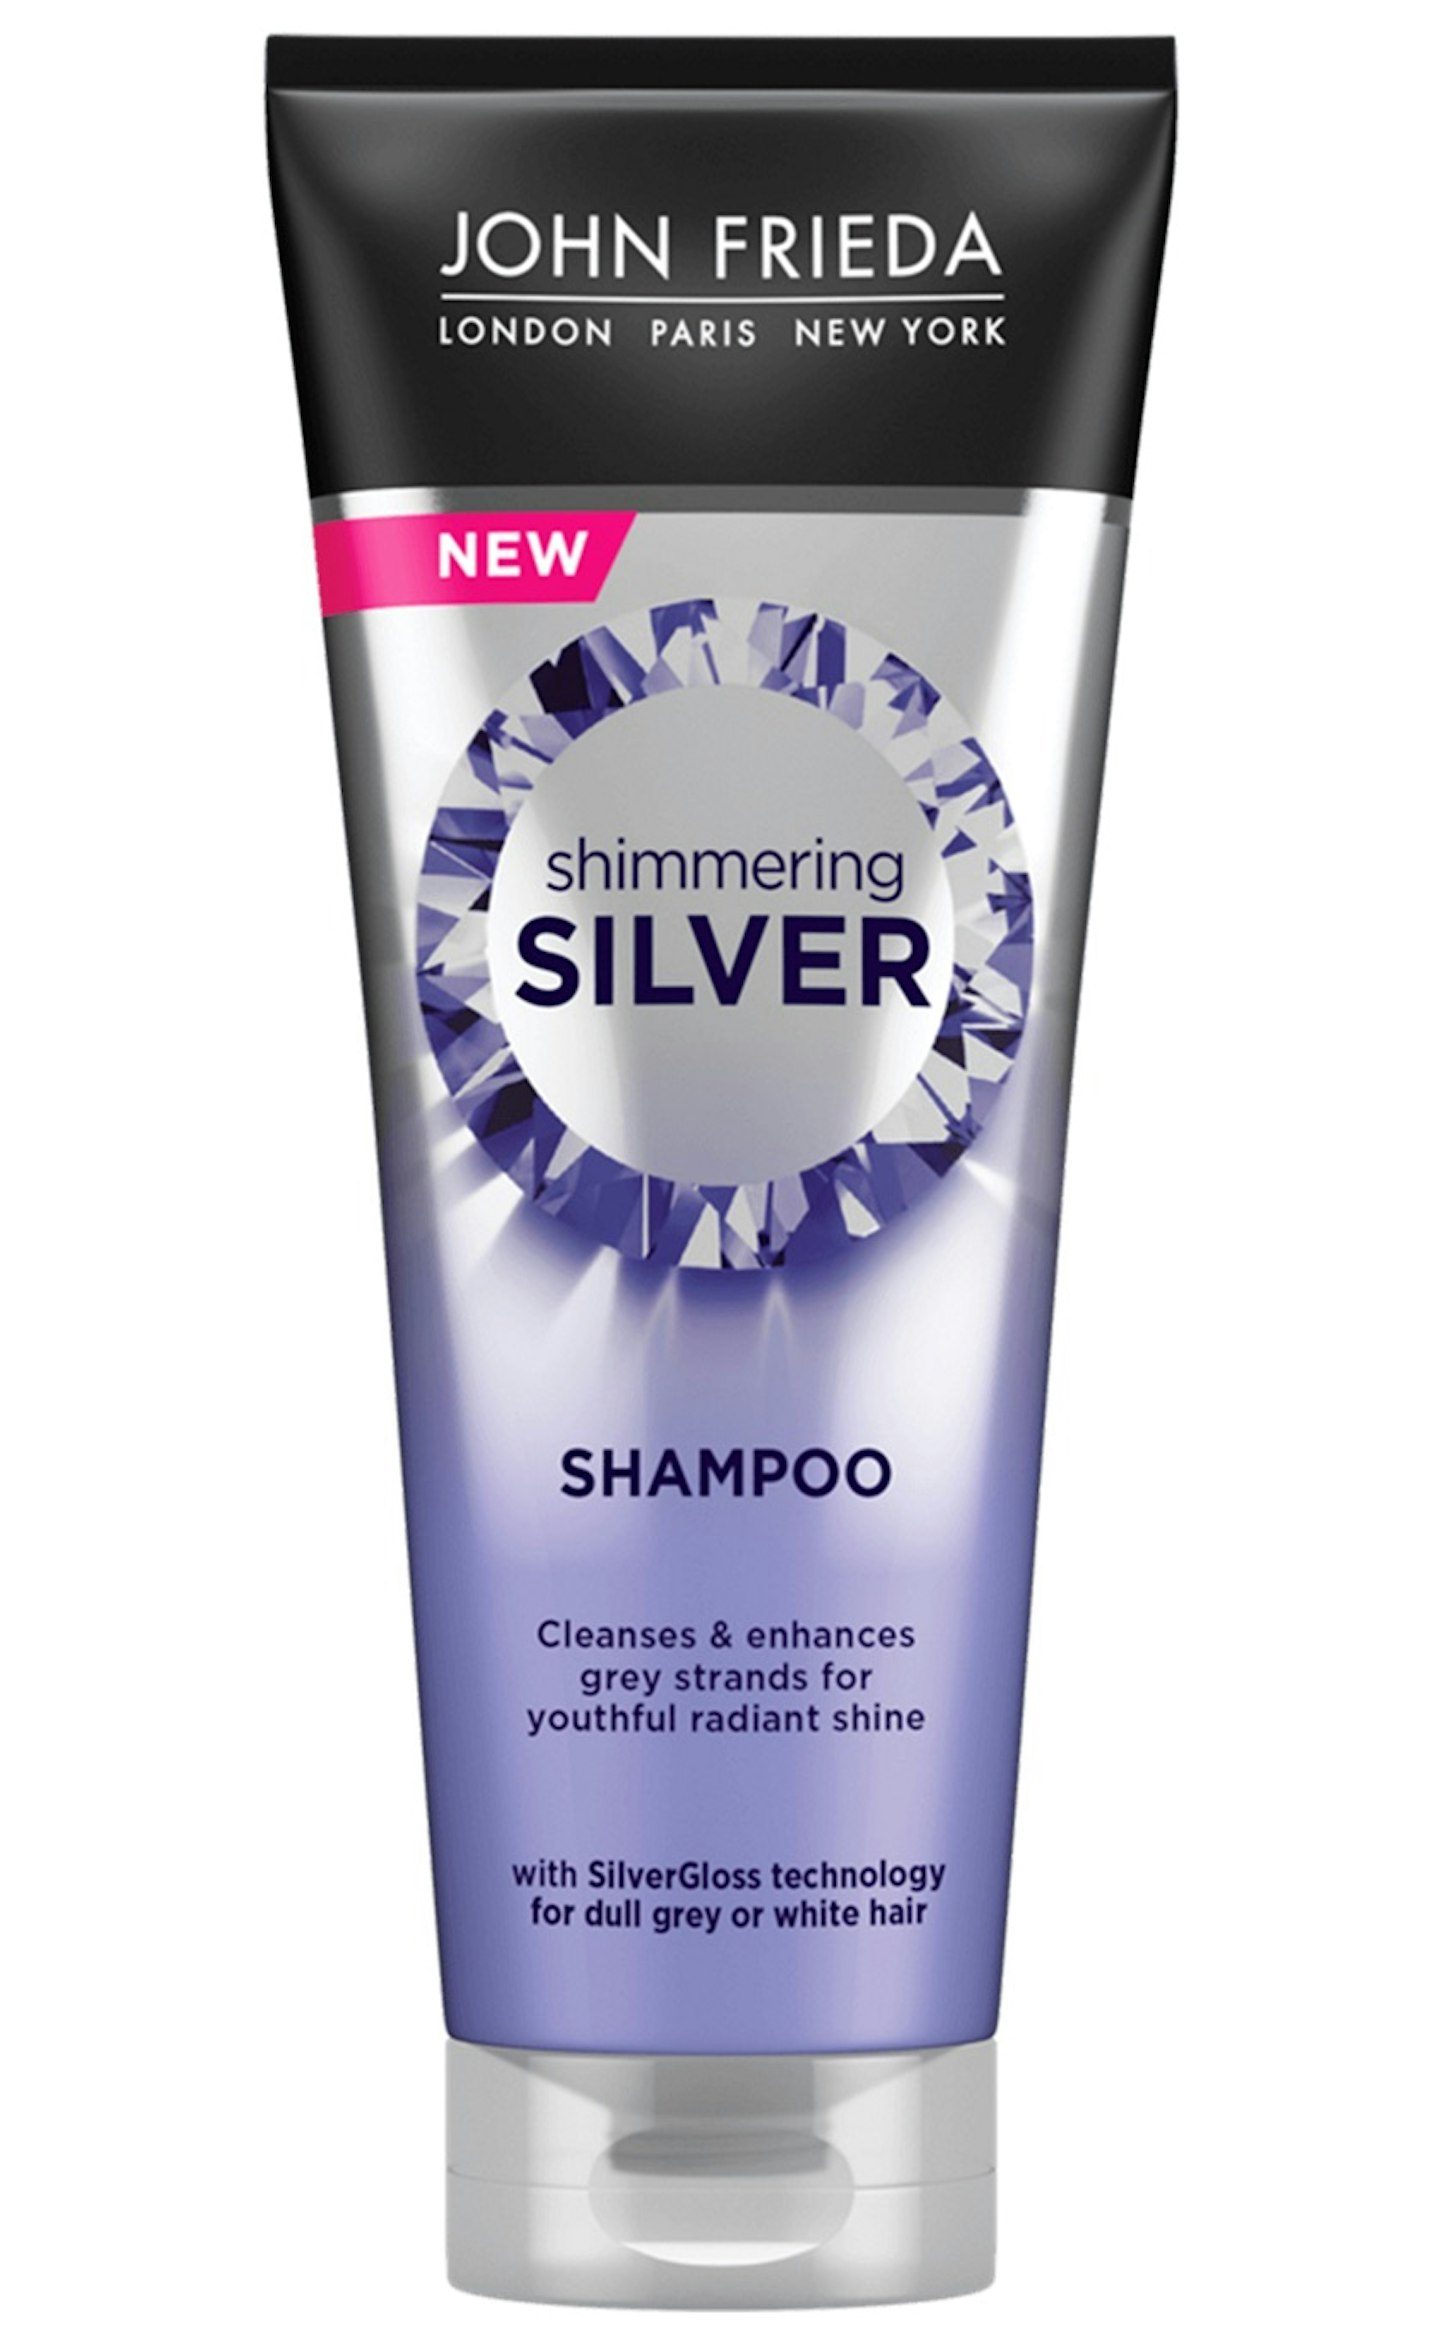 John Frieda Shimmering Silver Shampoo, £5.99